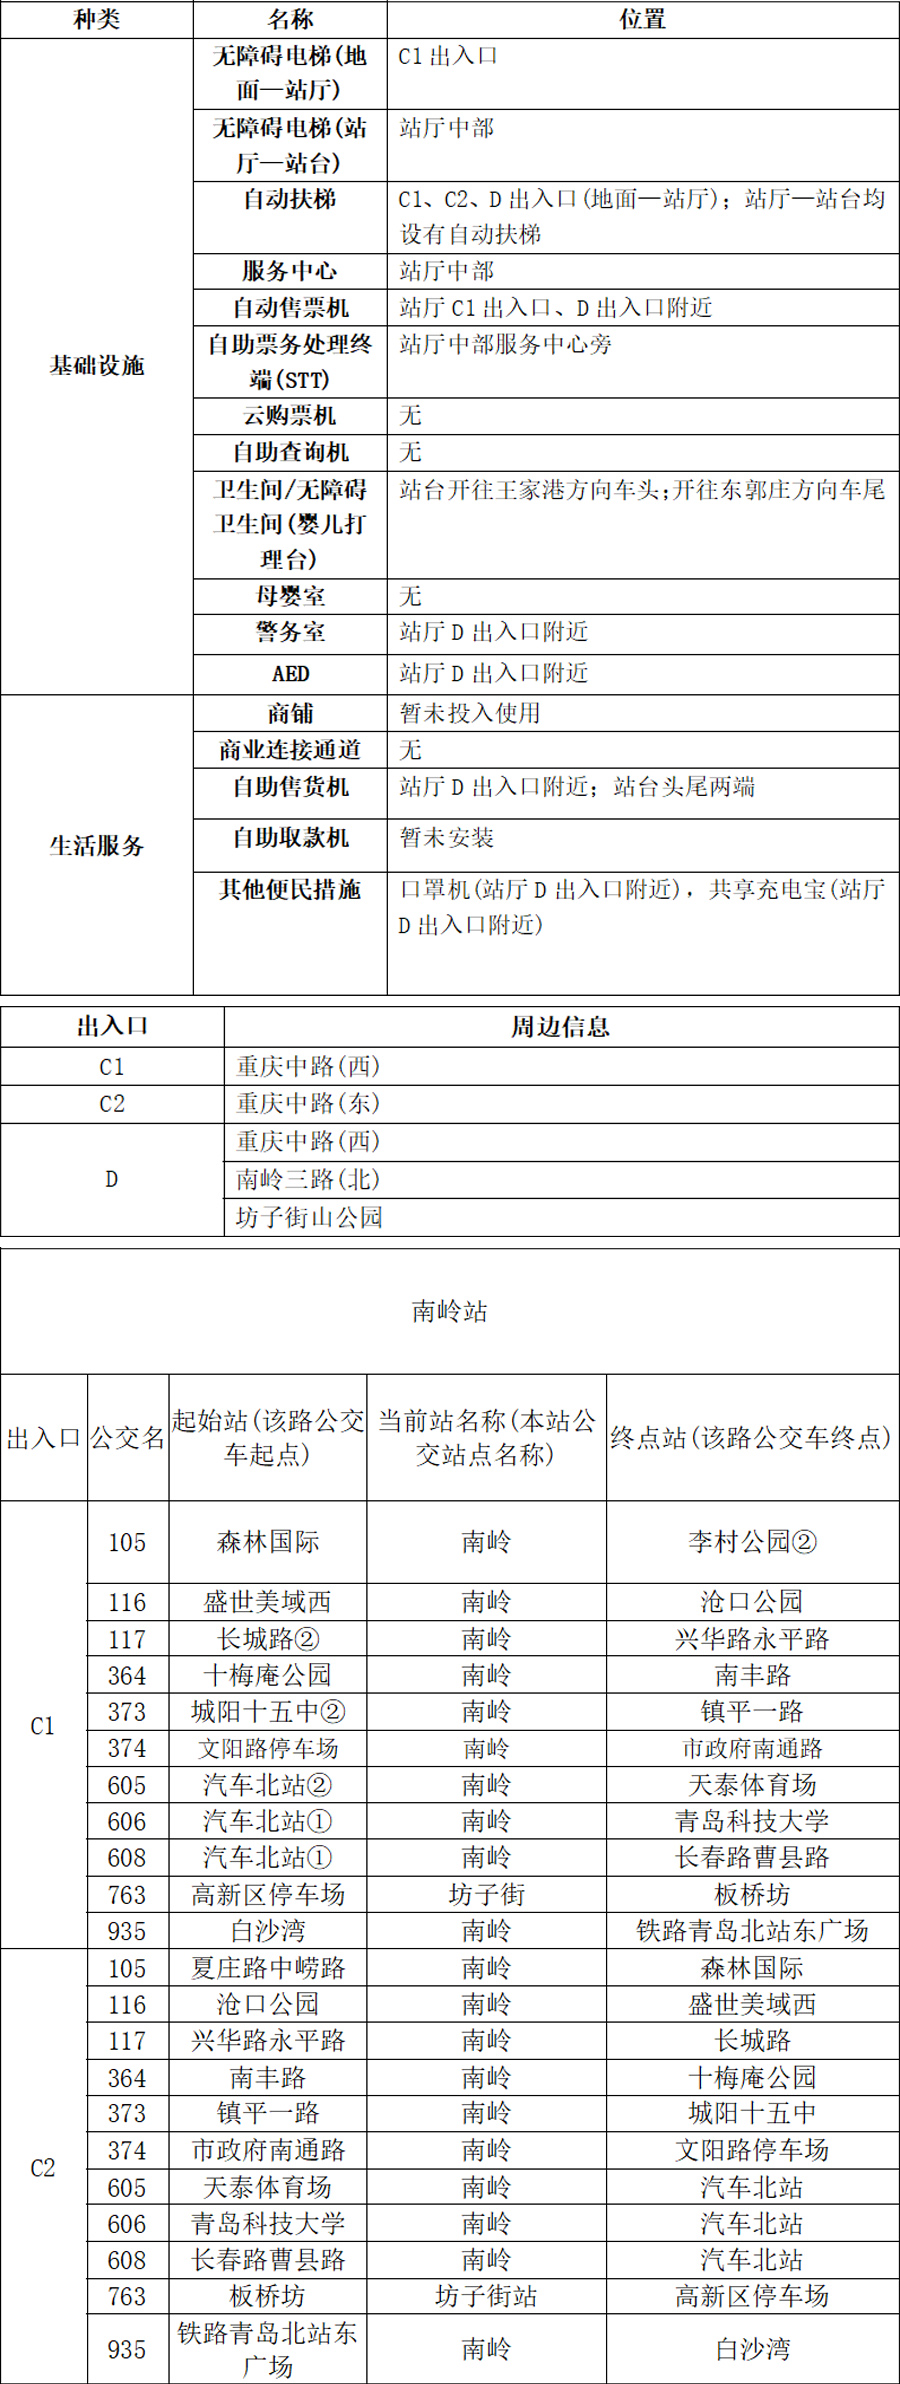 32南岭站-青岛地铁app站点信息10.30(1)(1)(1) 拷贝.jpg